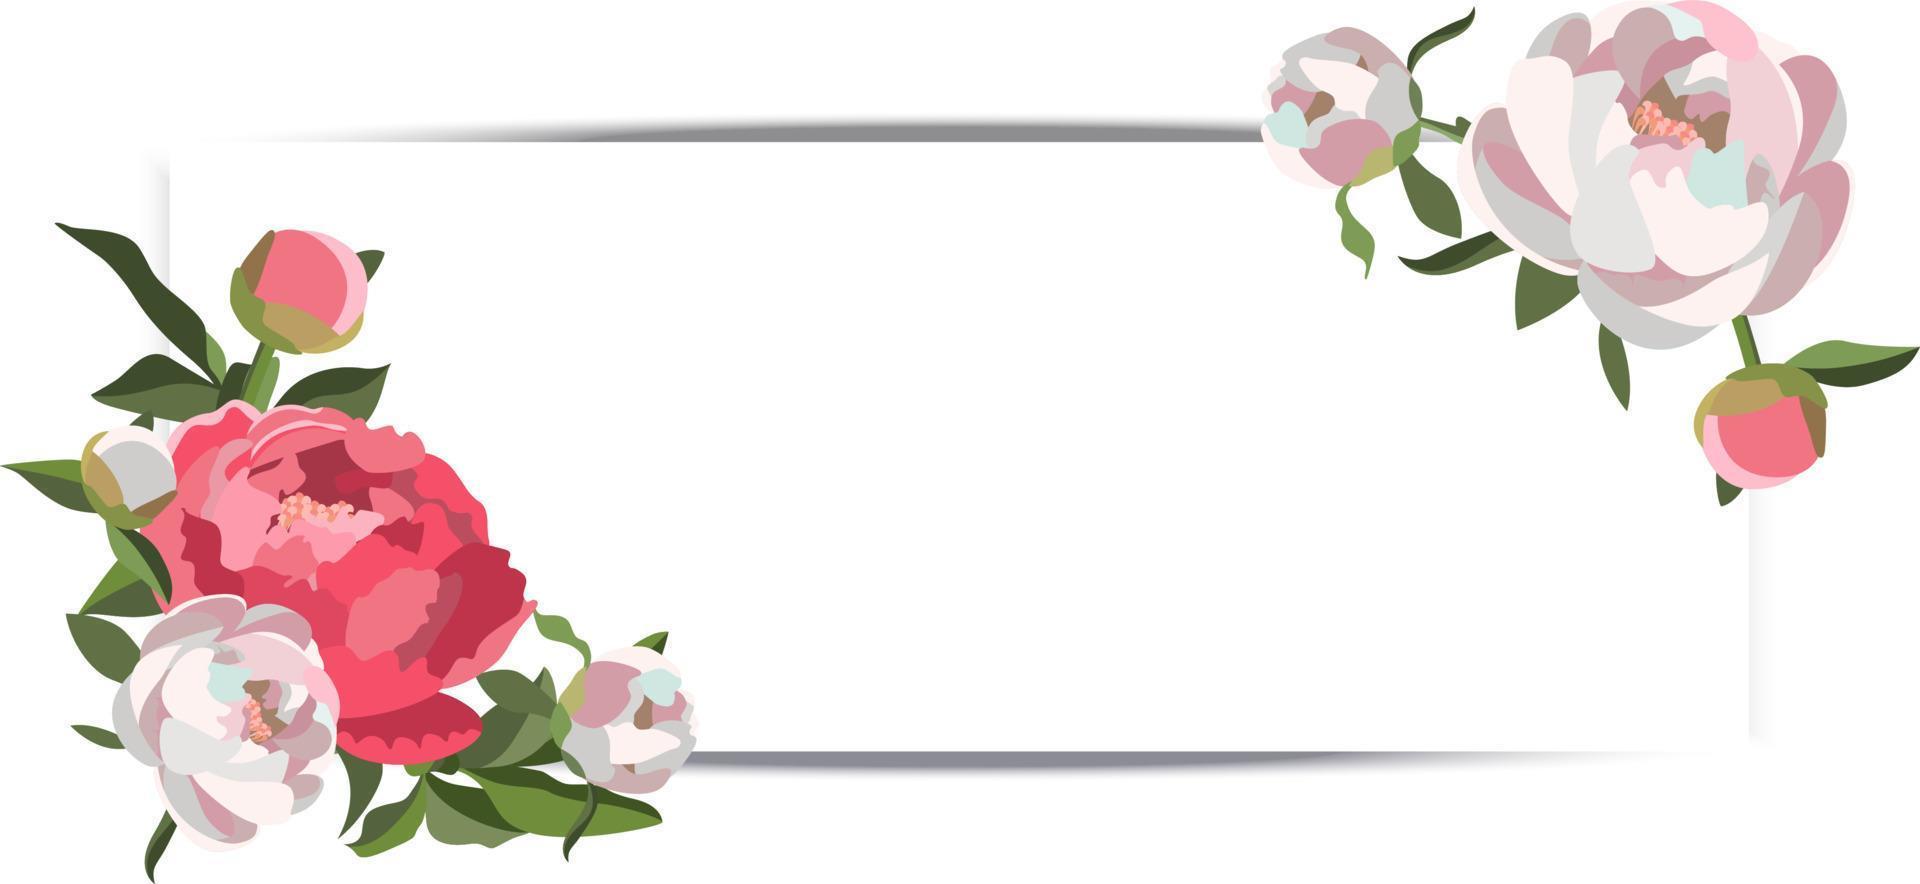 banner de boda horizontal vectorial con composiciones florales de peonía blanca y rosa vector